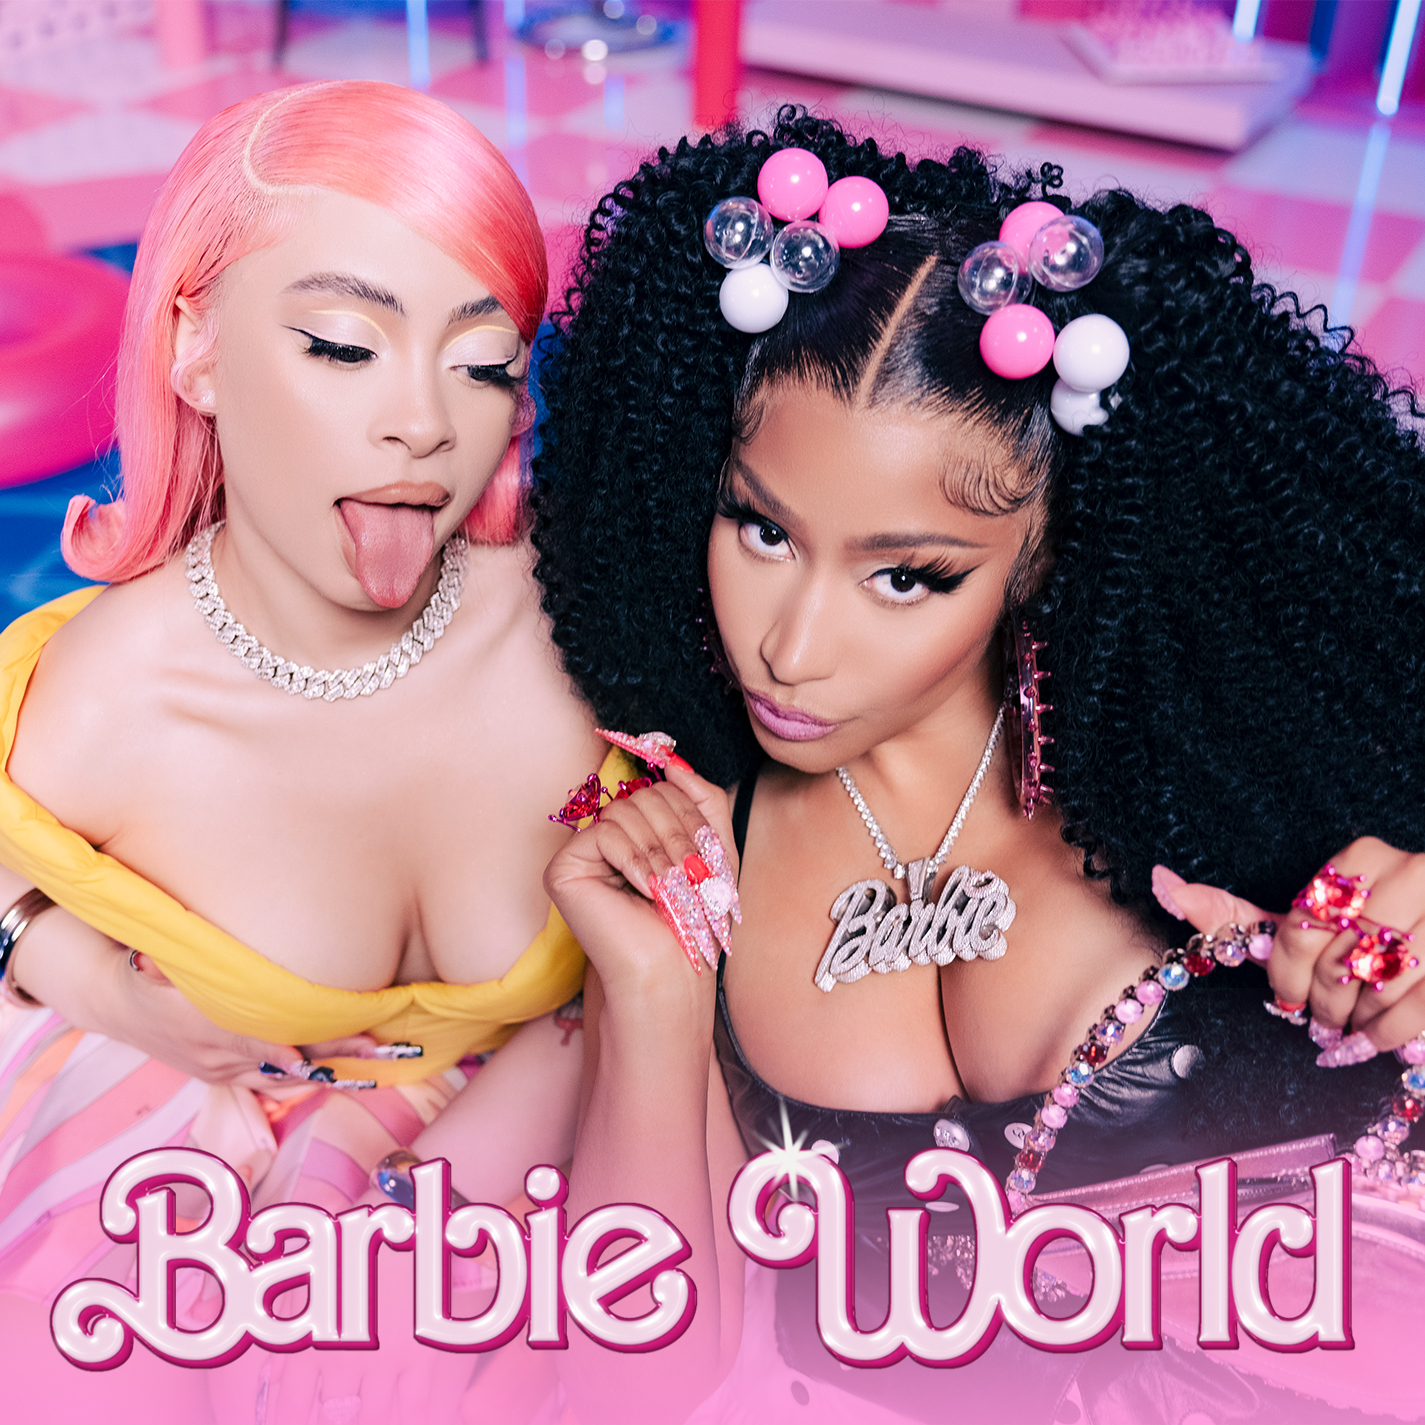 Art for Barbie World (Dirty) by Nicki Minaj & Ice Spice (with Aqua)